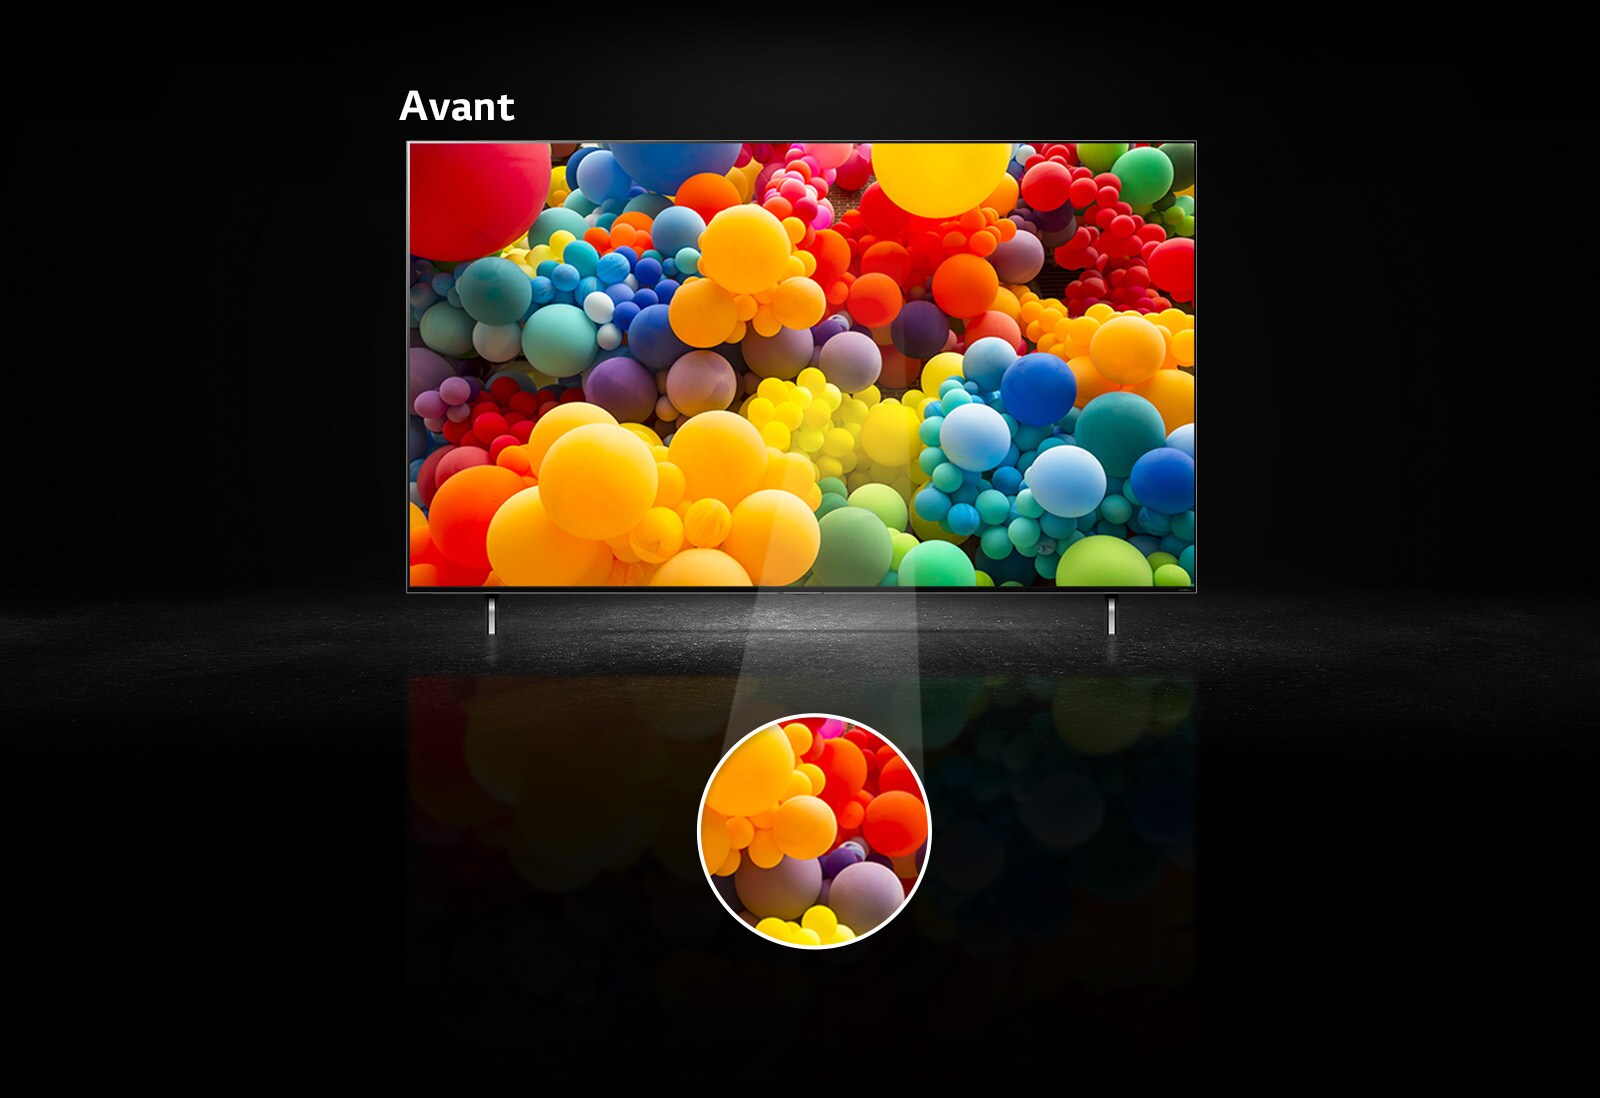 Vue de face de l’écran QNED et un mélange de ballons aux couleurs de l’arc-en-ciel à l’écran. Le texte indique « Avant » sur le dessus du téléviseur. Une partie centrale de l’écran est mise en évidence dans une zone circulaire séparée.